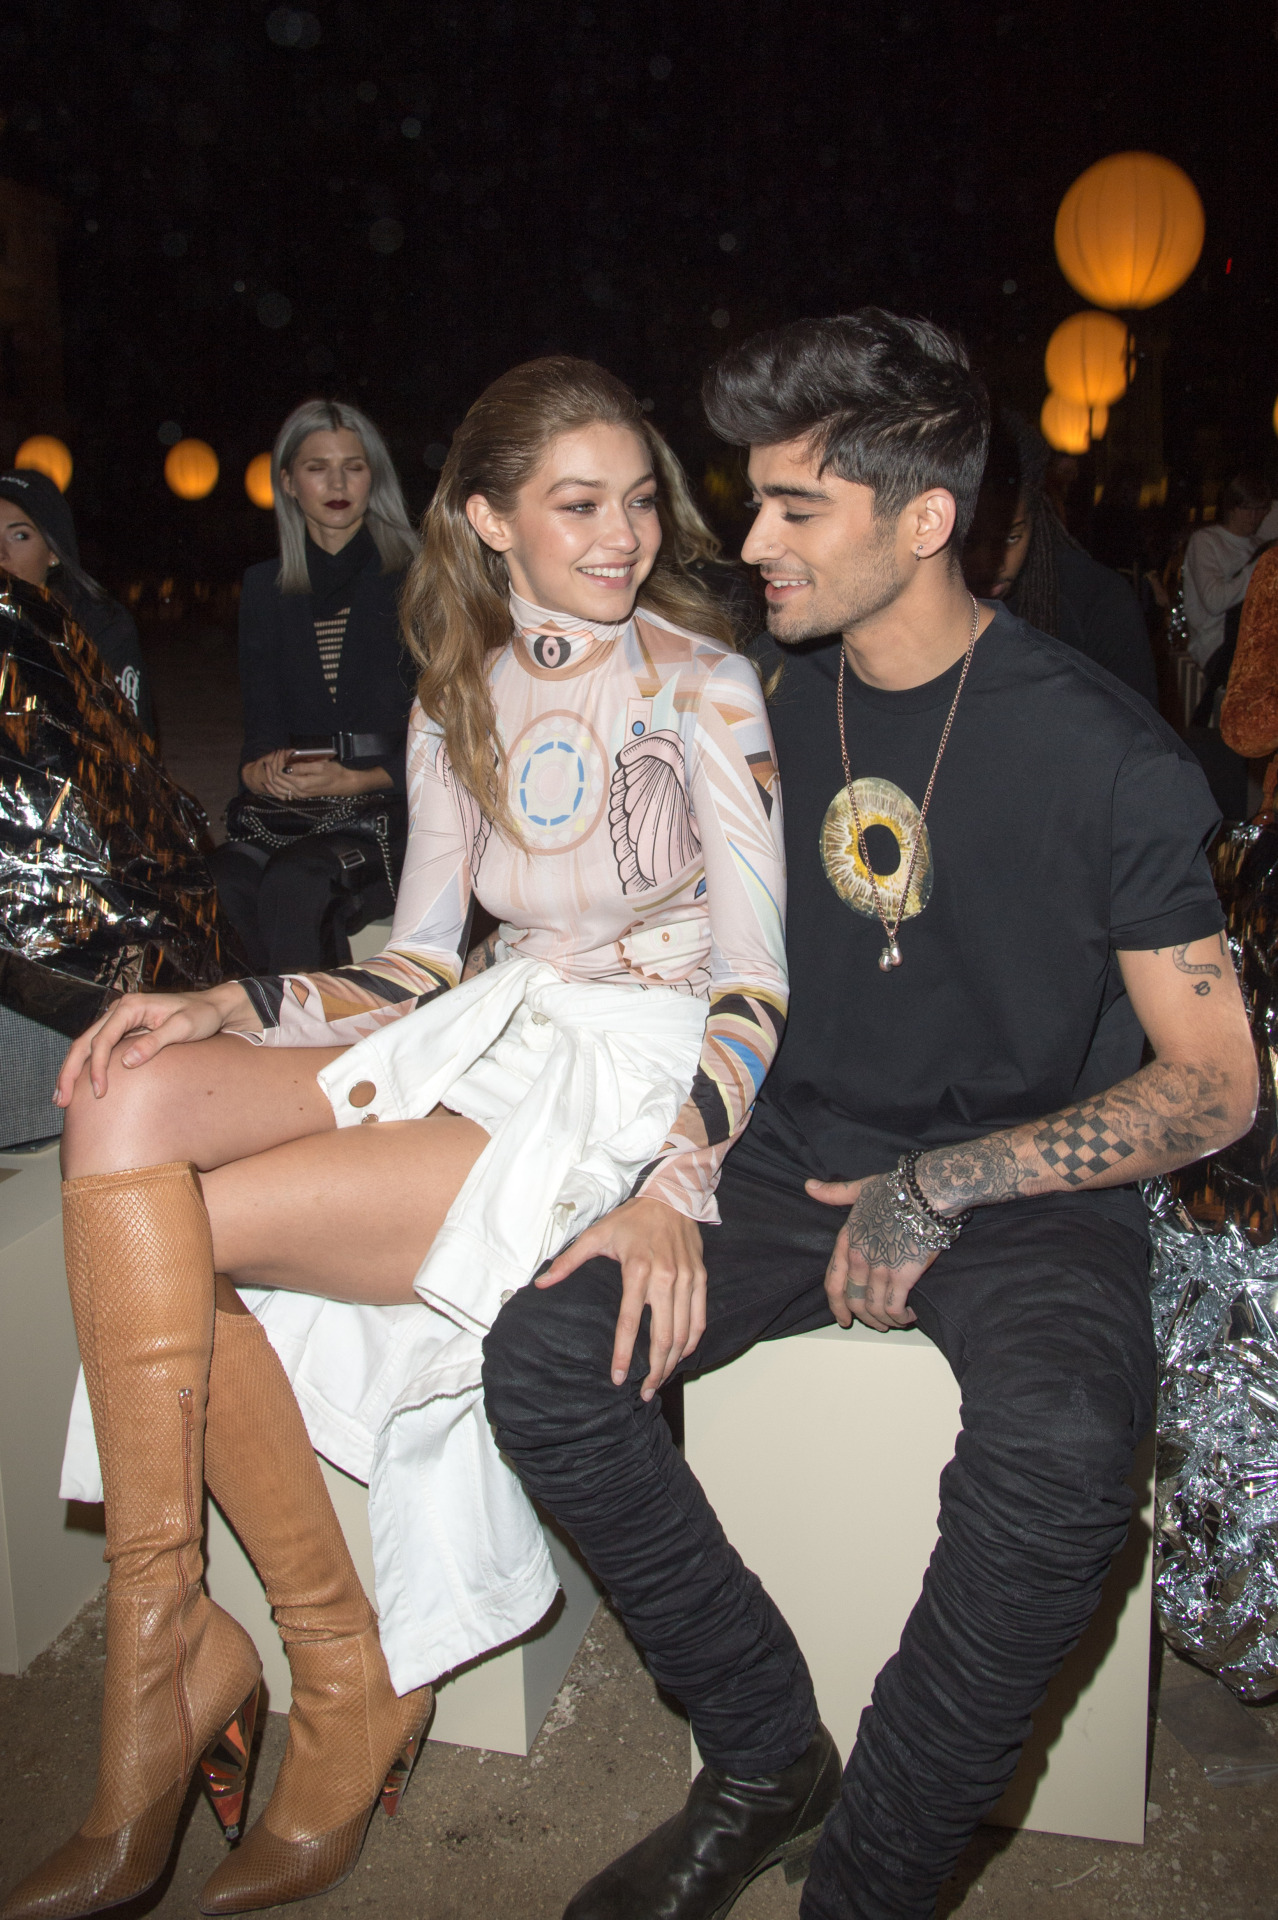 Zayn Malik sits Front Row at Paris Fashion Week supporting Gigi Hadid